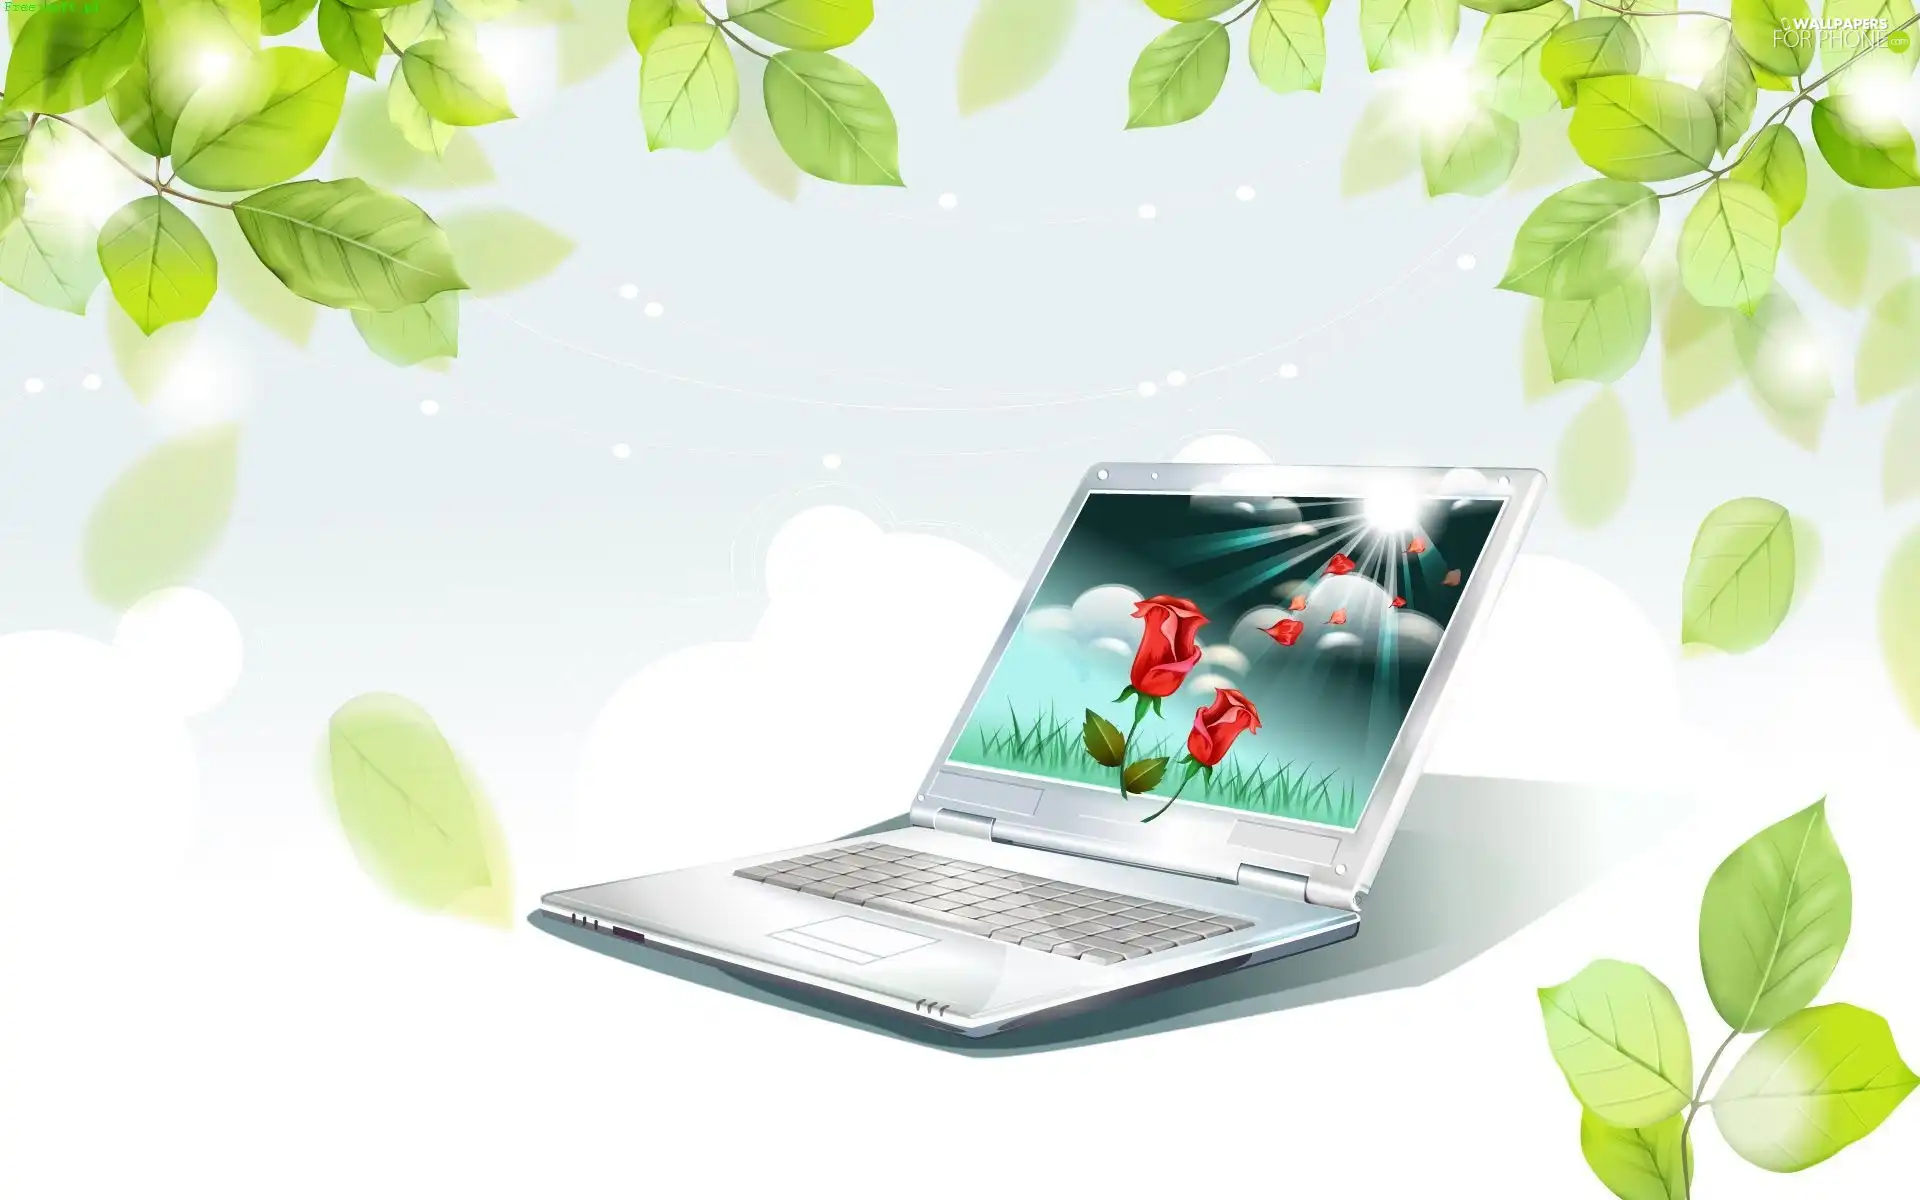 Leaf, laptop